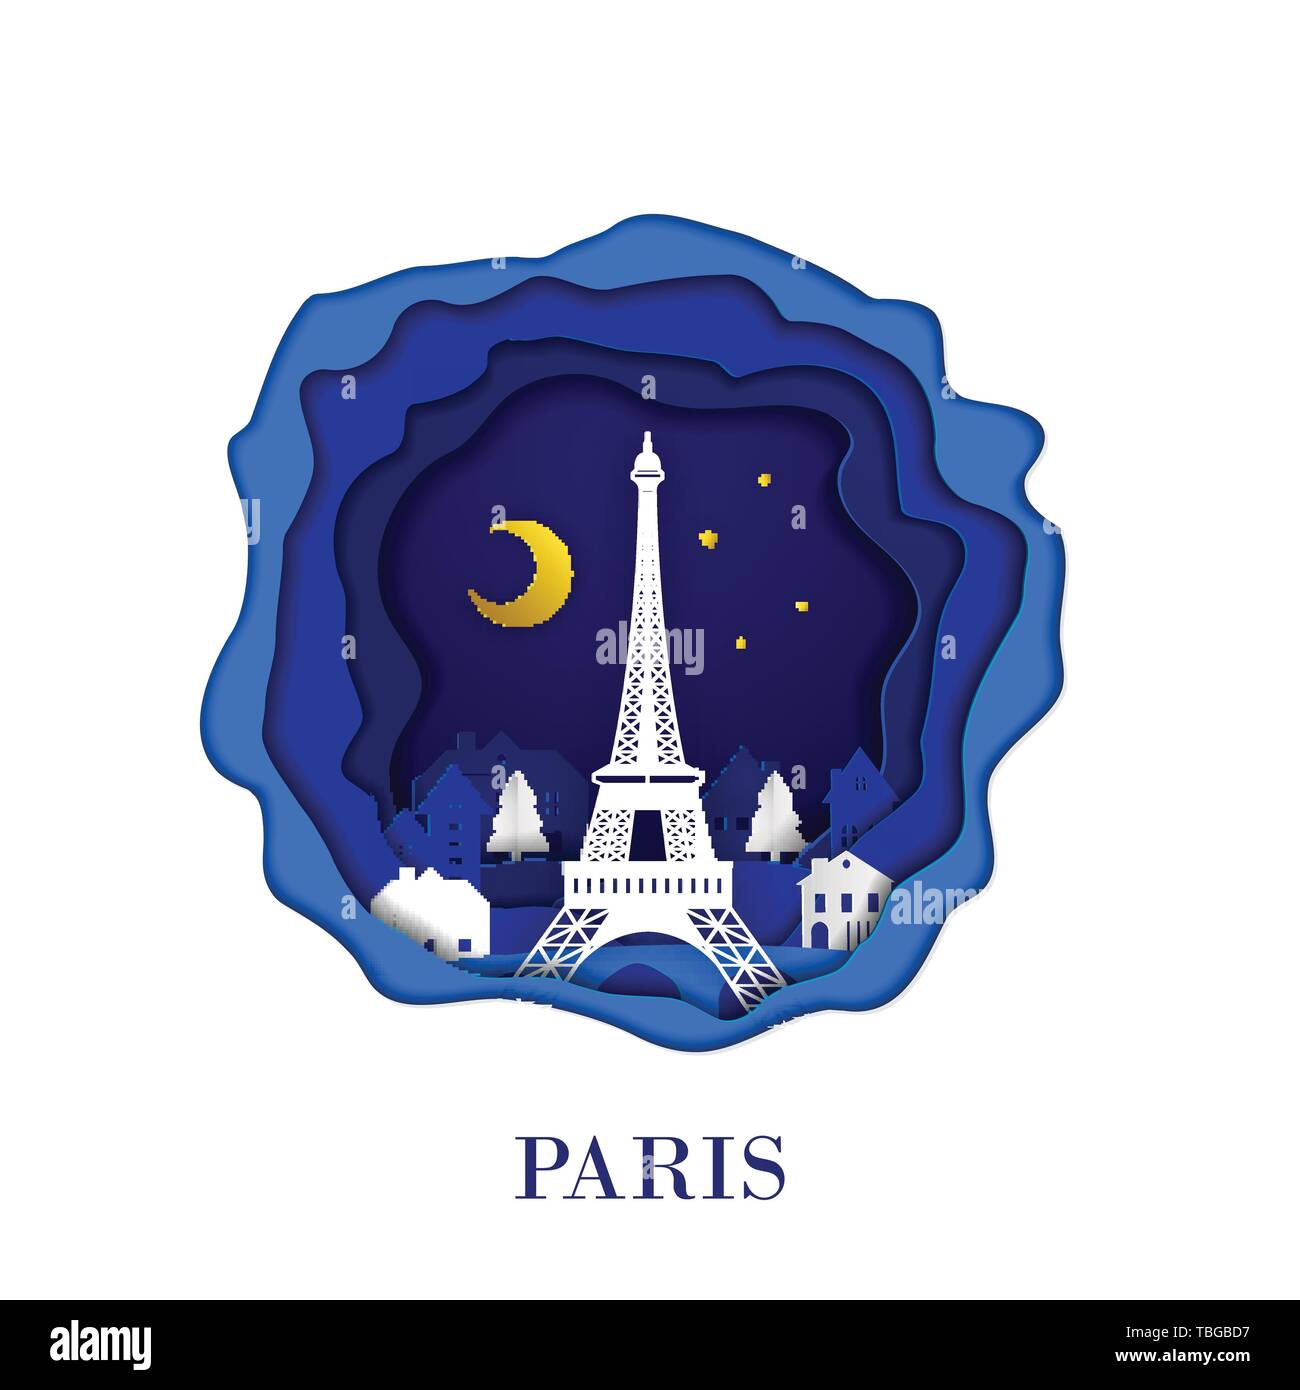 Die Stadt Paris Frankreichs in digital Craft paper Art. Nacht Szene. Reise und Reiseziel Sehenswürdigkeit Konzept. Papercraft Stil Stock Vektor